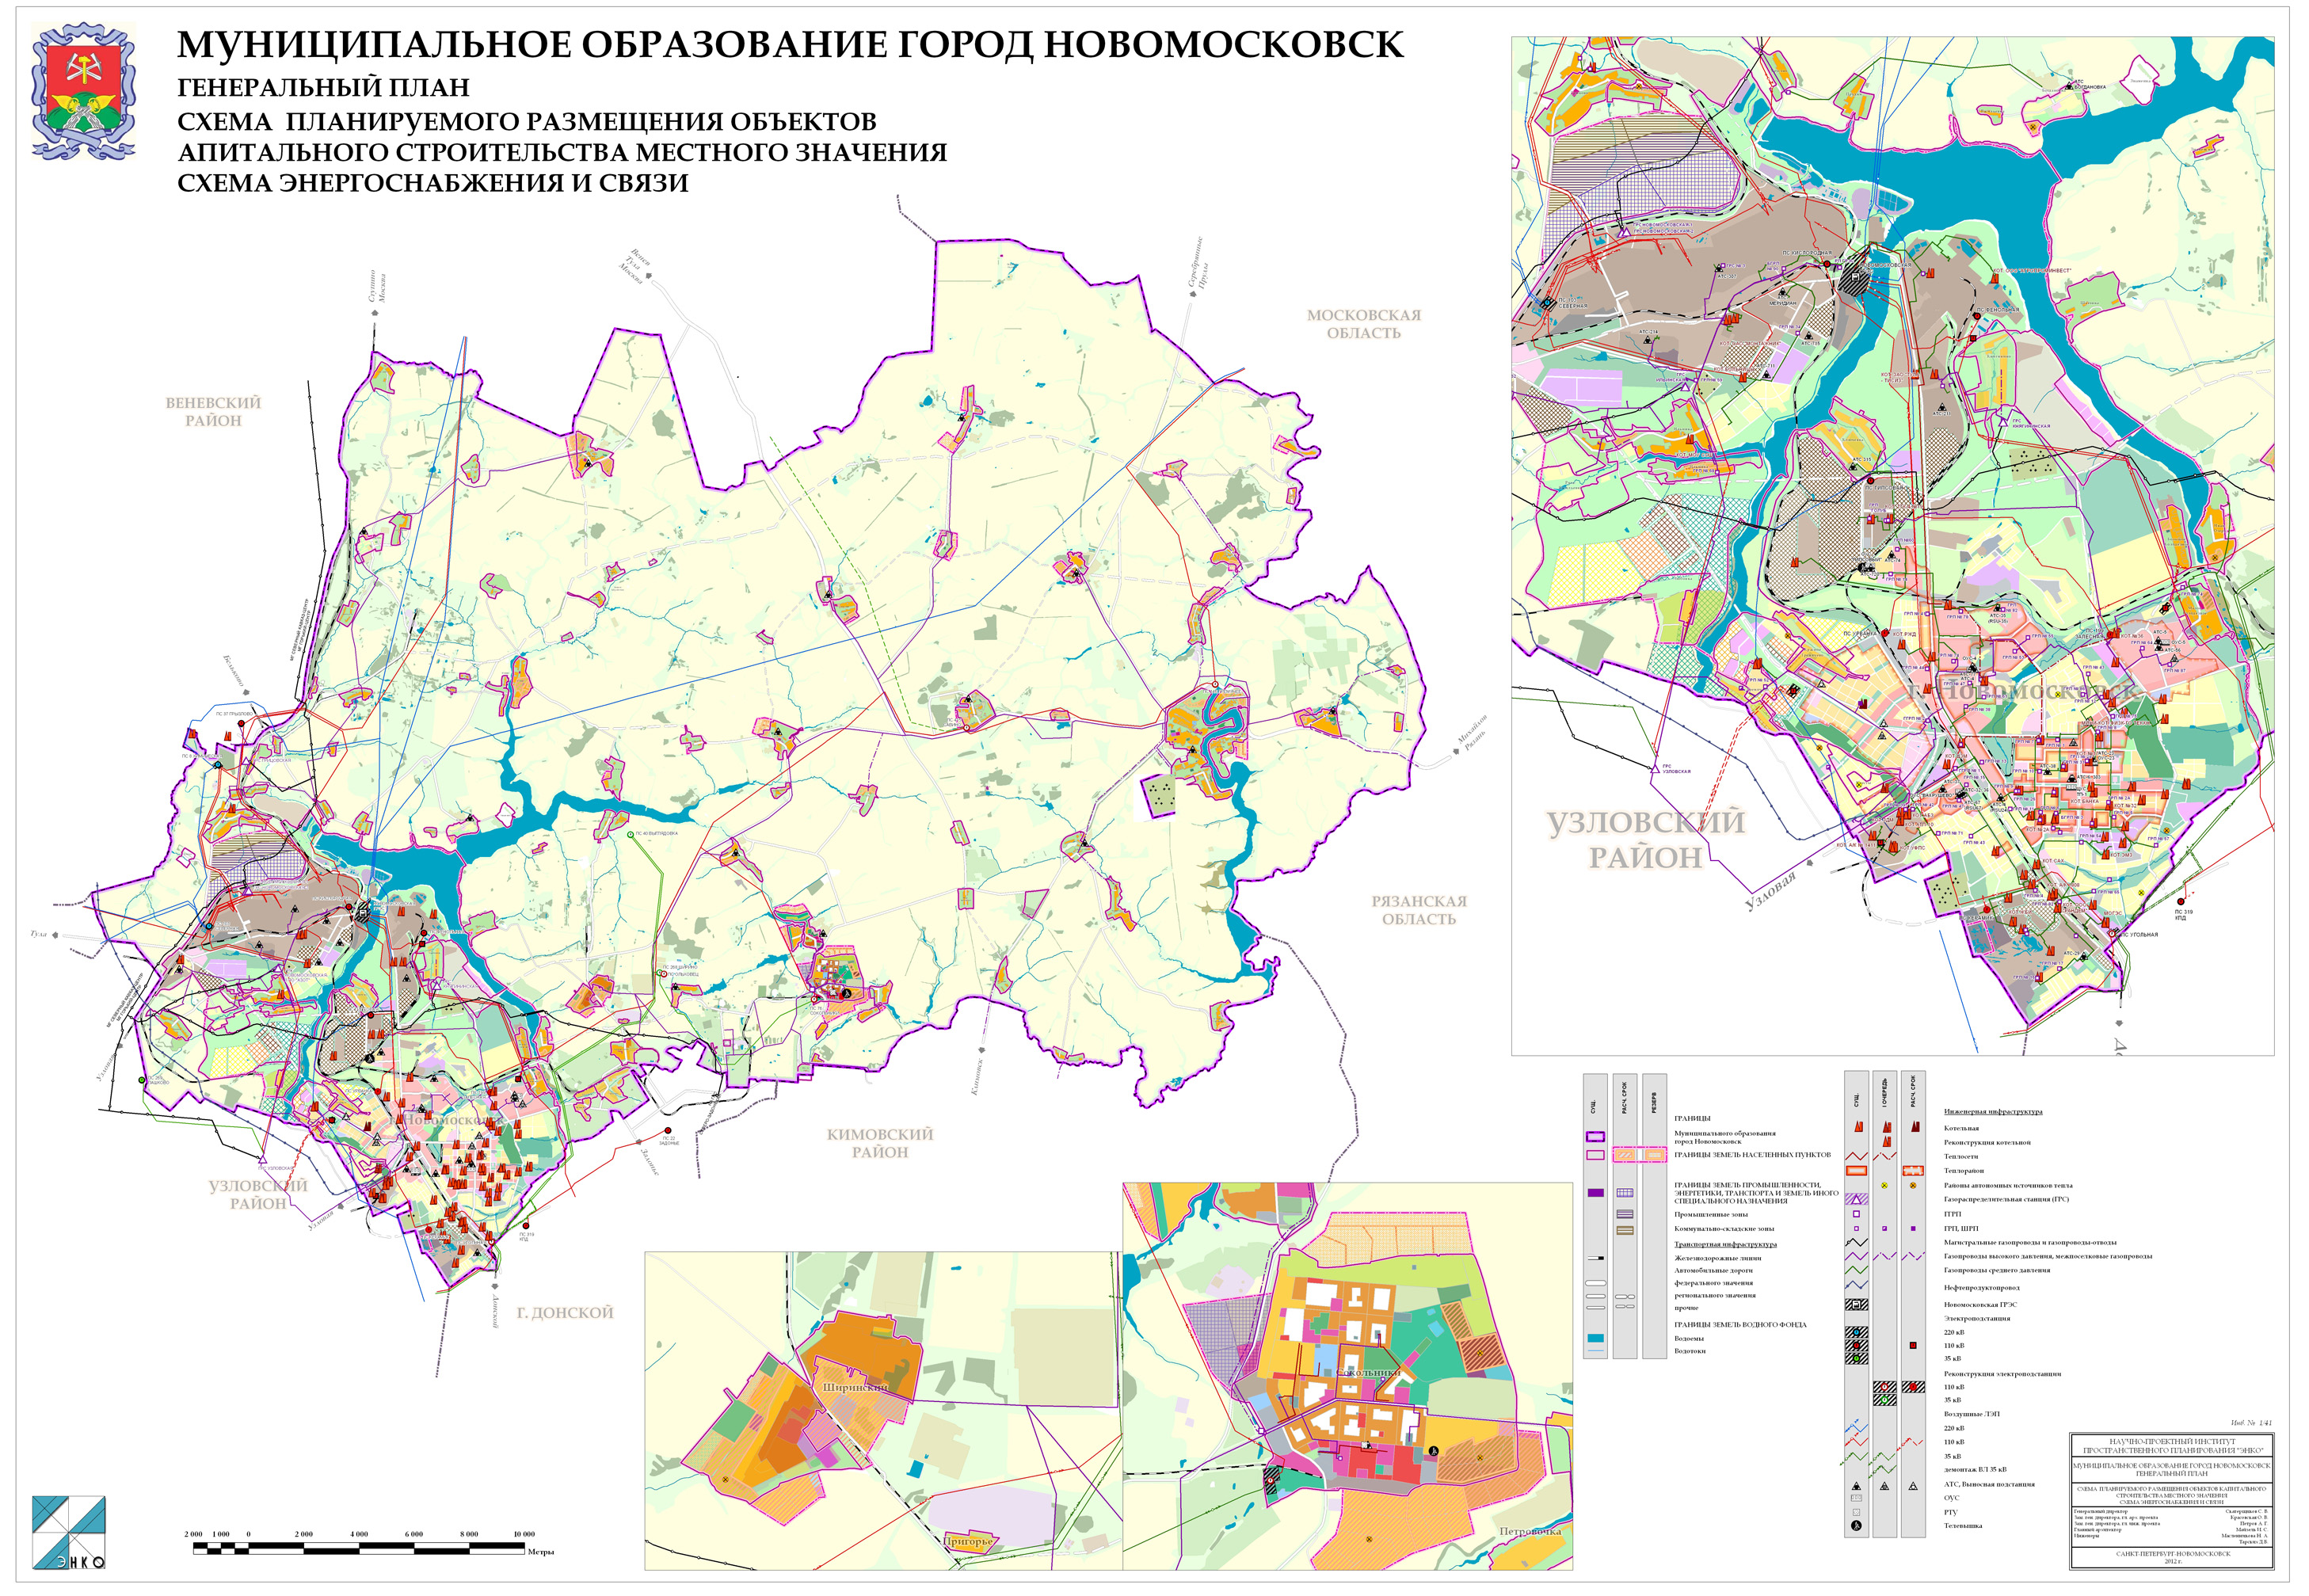 Генеральный план муниципального образования город НовомосковскНовомосковского района (2012 год)